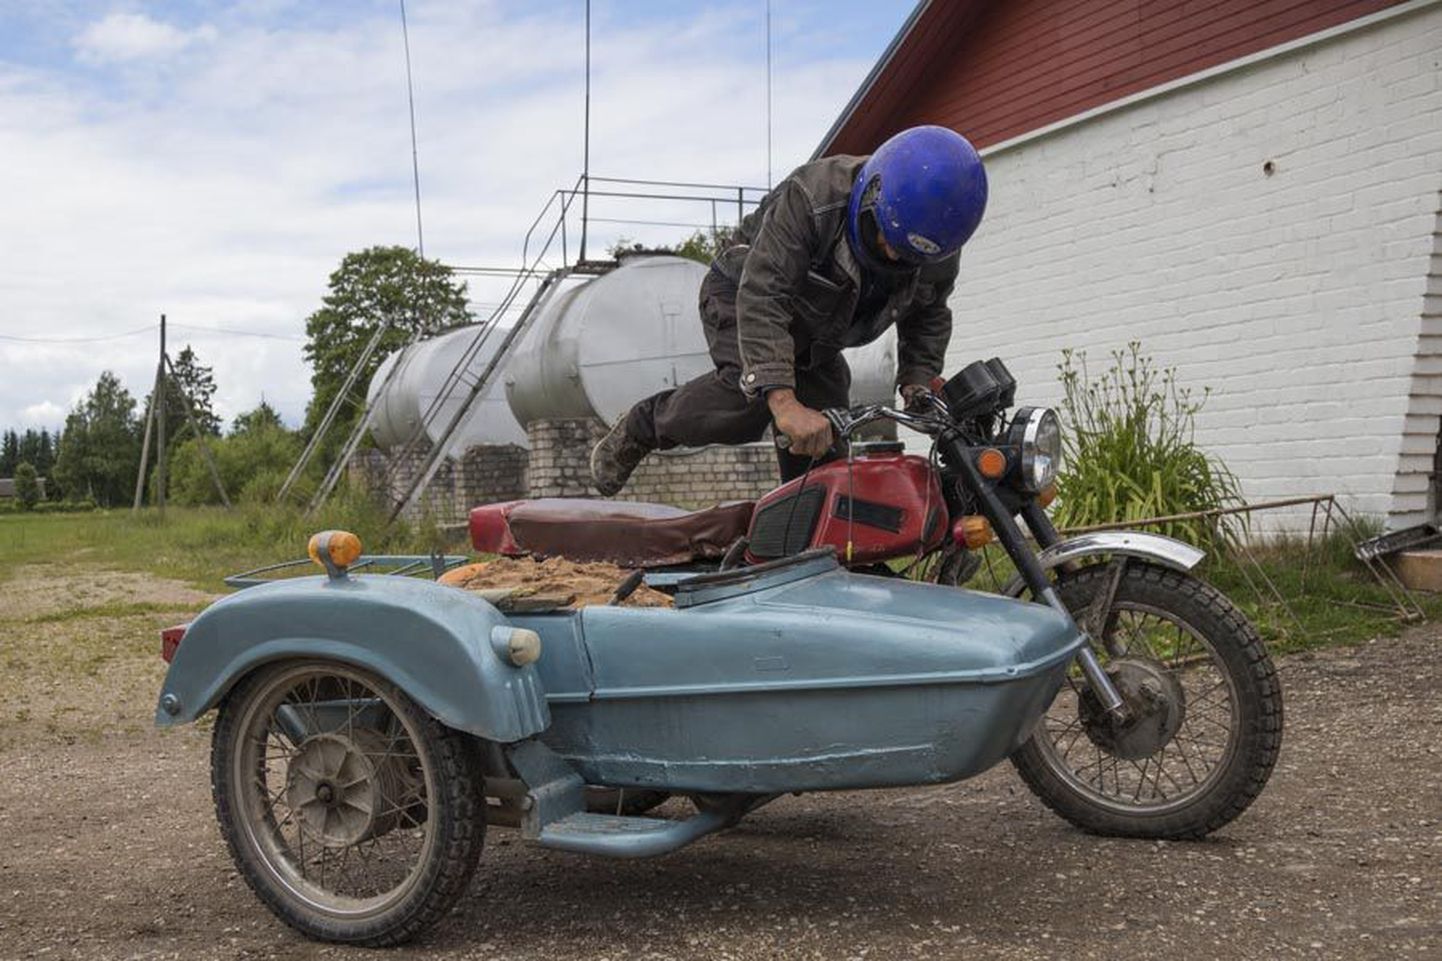 Tsikliga pääseb 59-aastane Hillar Varusk suvel kaugele metsa ning see sõiduk teenib teda hästi ka veovahendina. Korv käib lahti ja sellega on lihtne kaupa transportida.